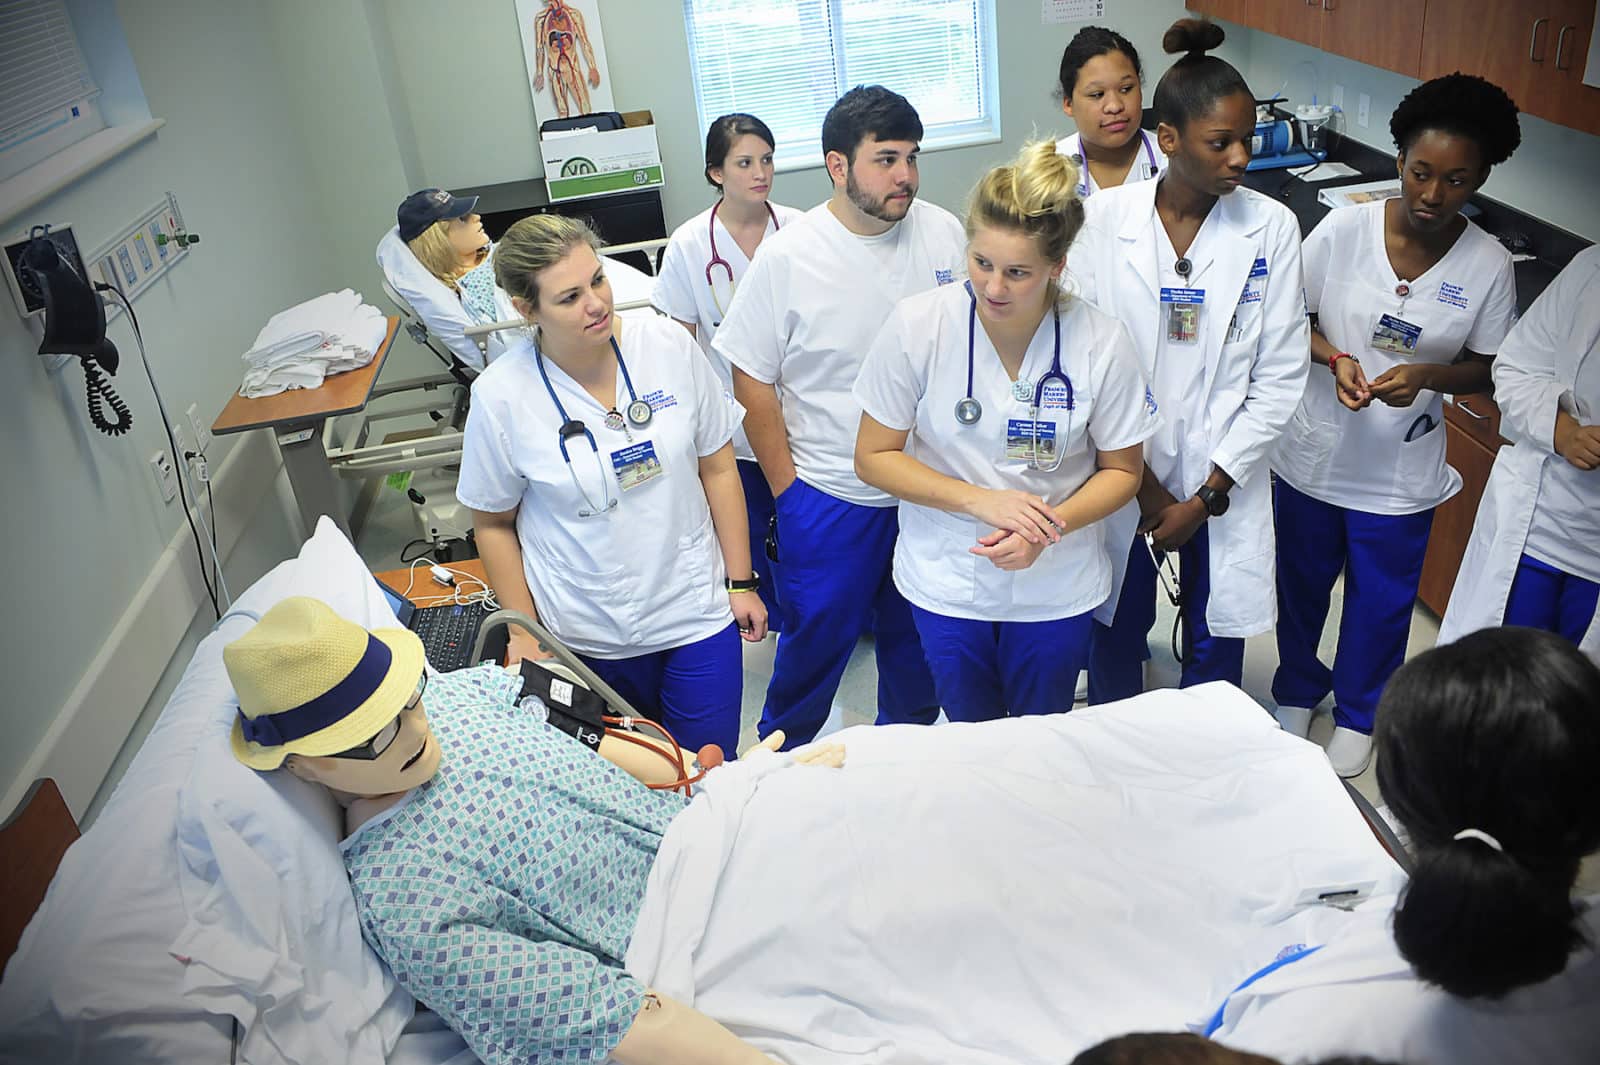 FMU Nursing lands $1.8 million federal grant